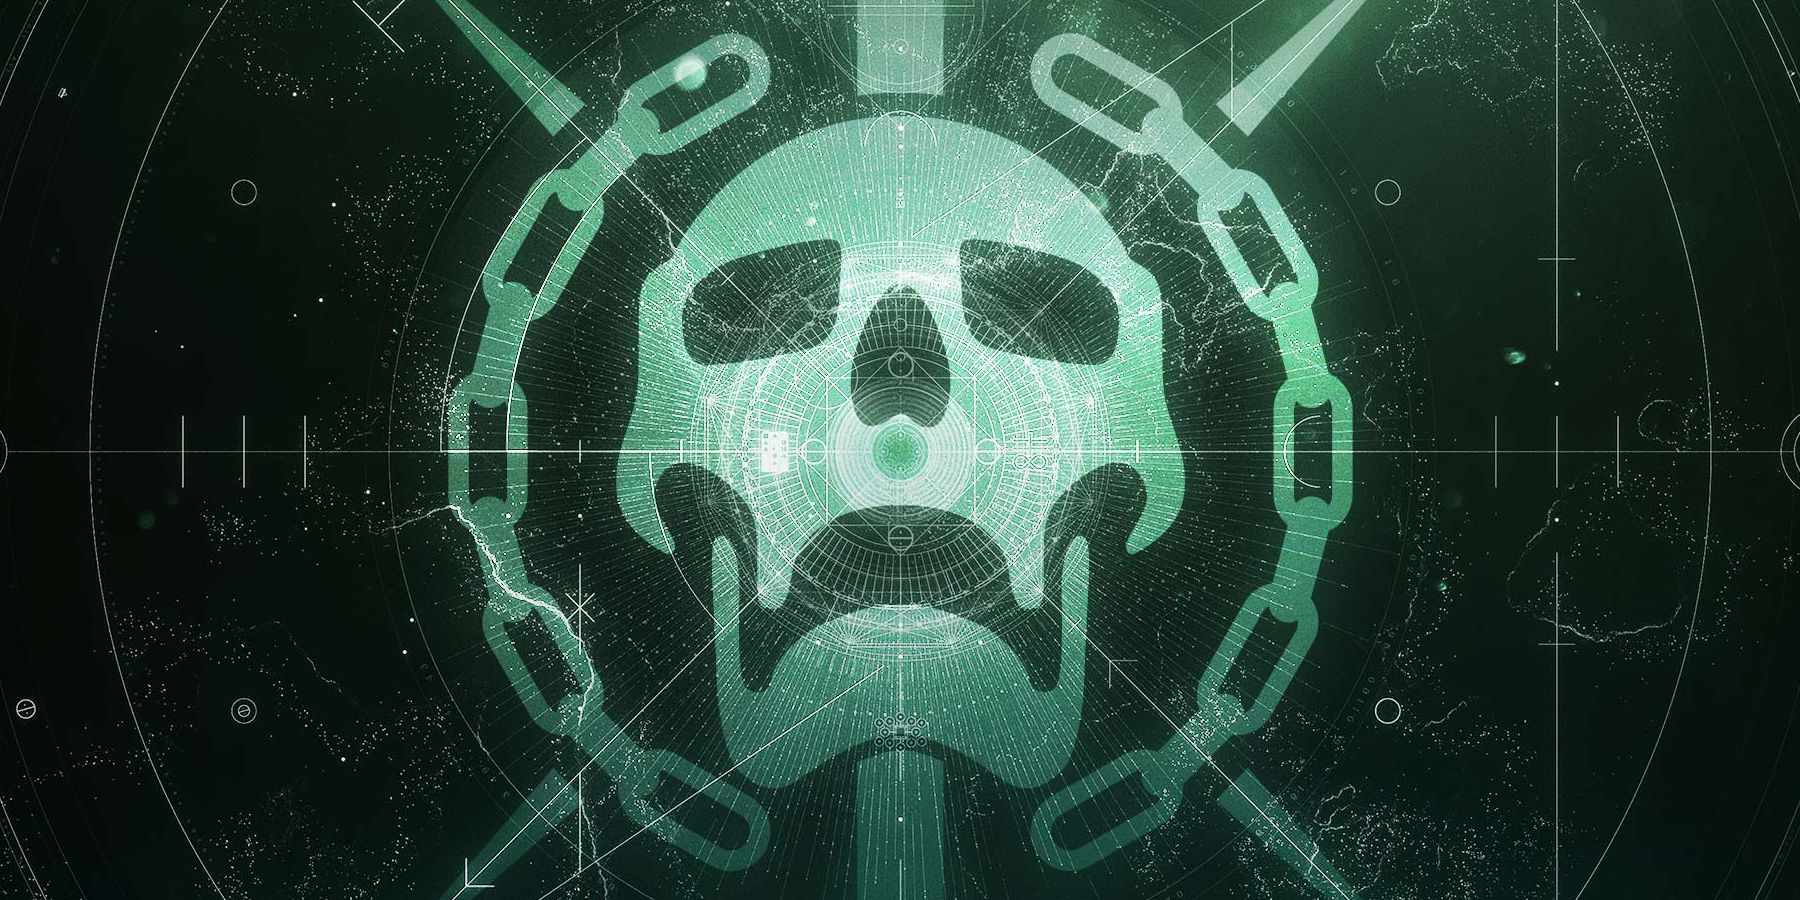 The raid skull logo from Destiny 2.